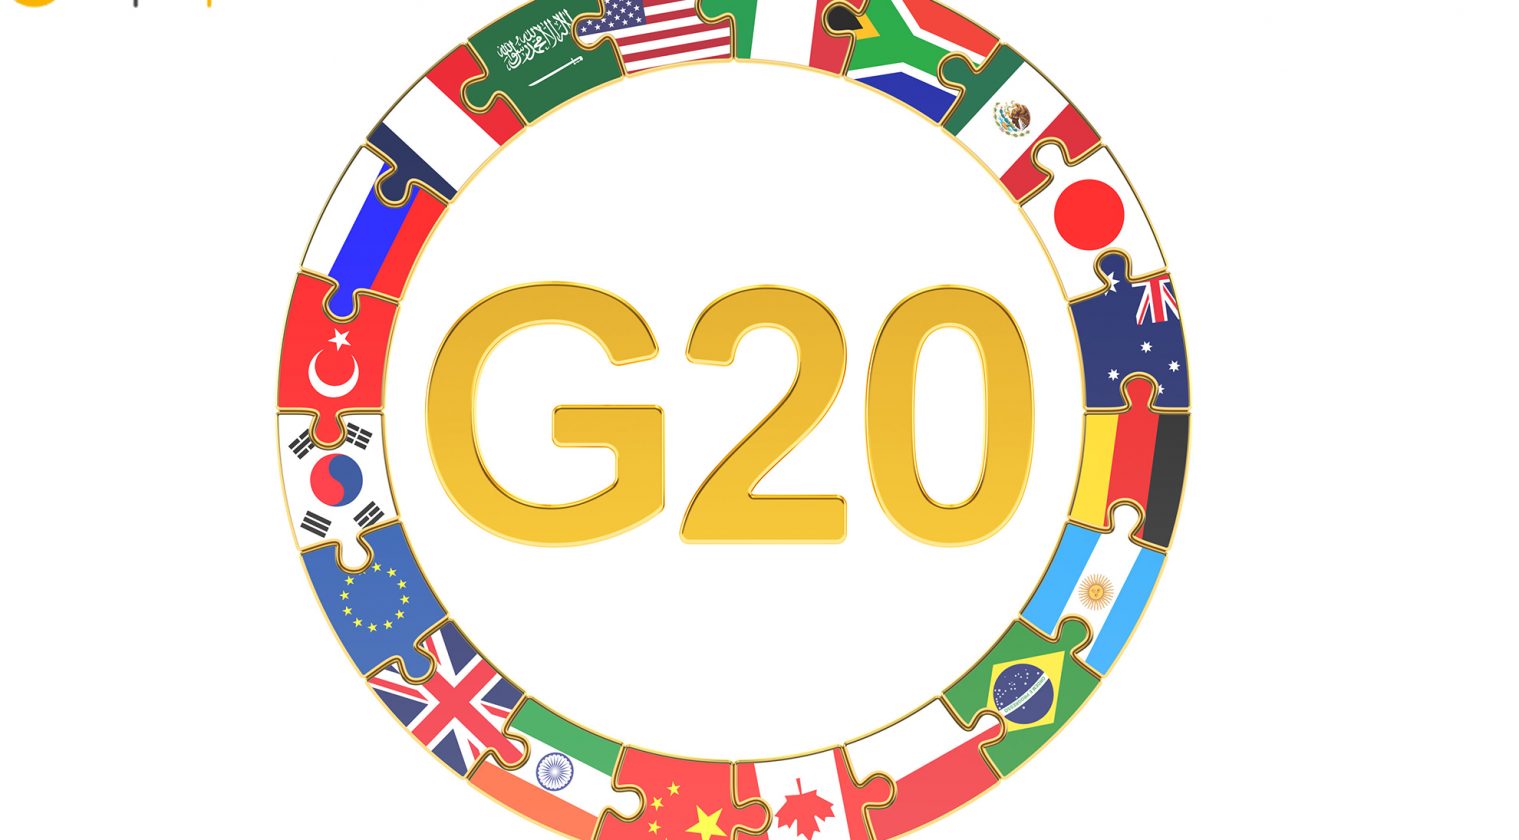 G20 Finansal İstikrar Kurulu: “Stabilcoinler büyük tehditler yaratıyor.”